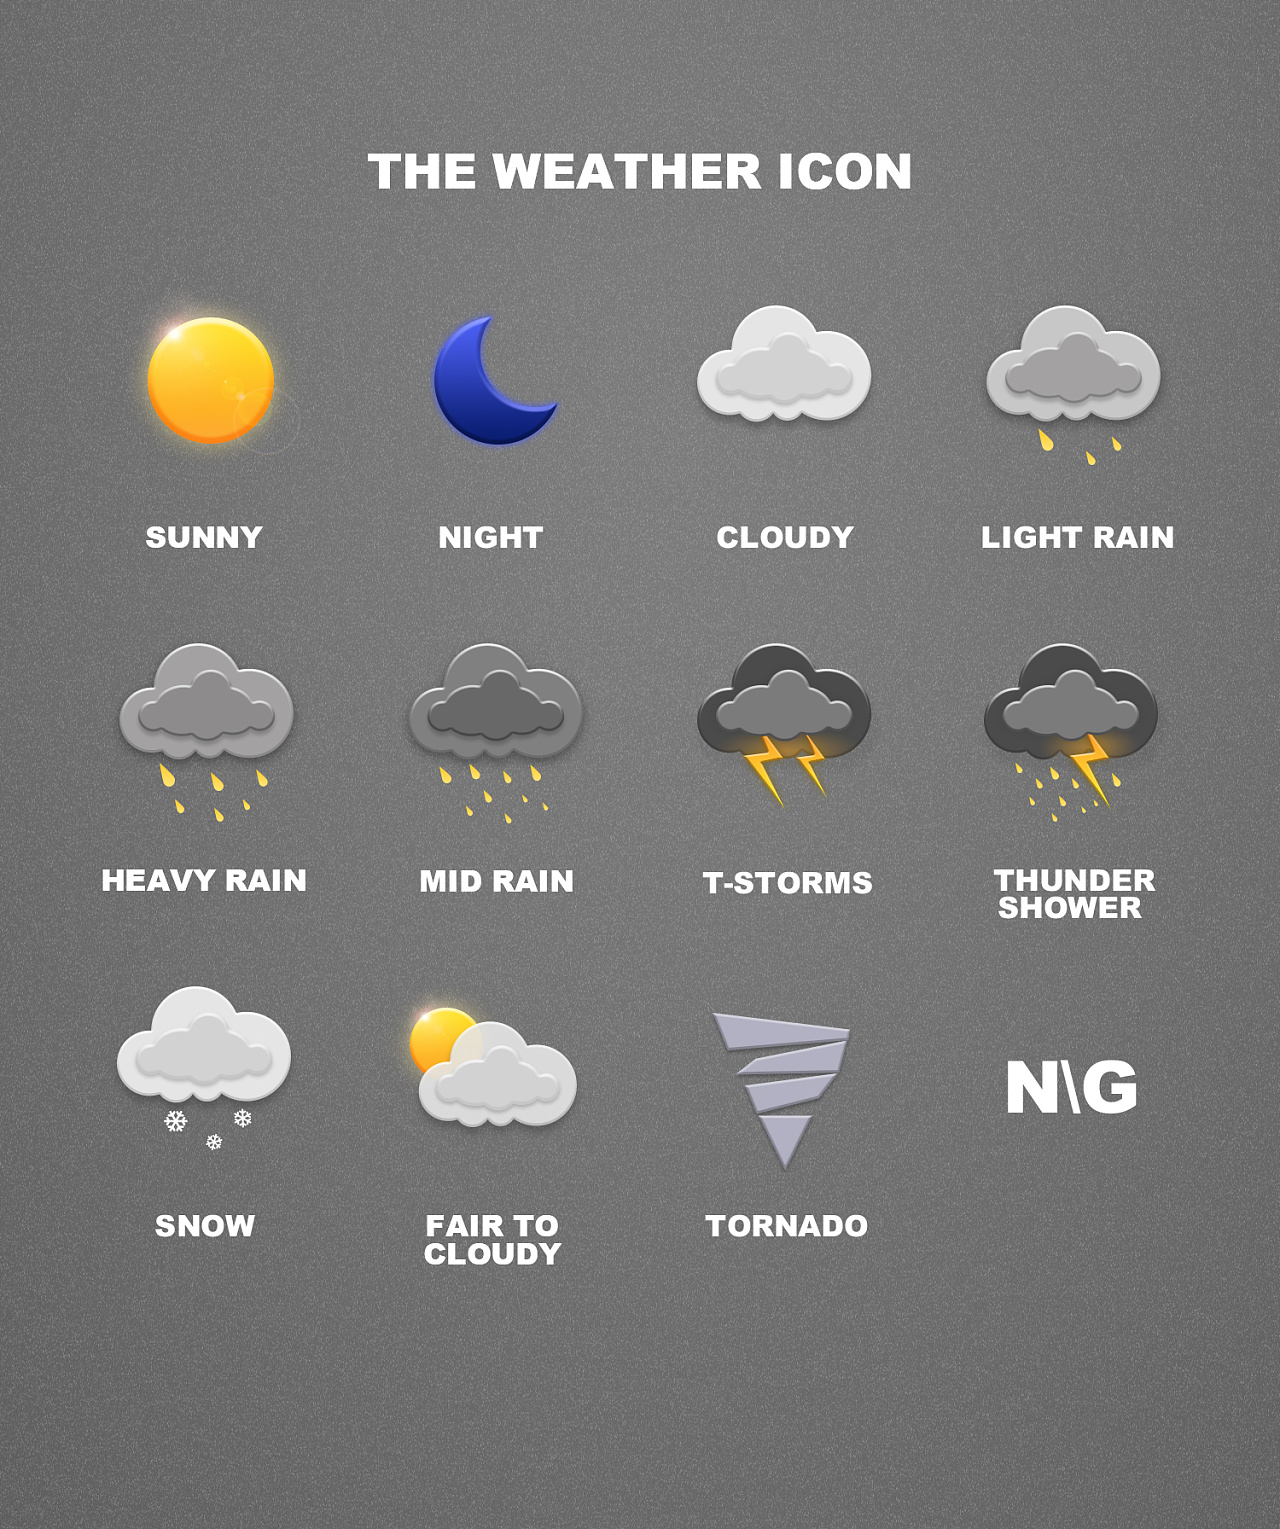 主要天气类型：晴热、多雷阵雨、台风(主要天气类型是什么)